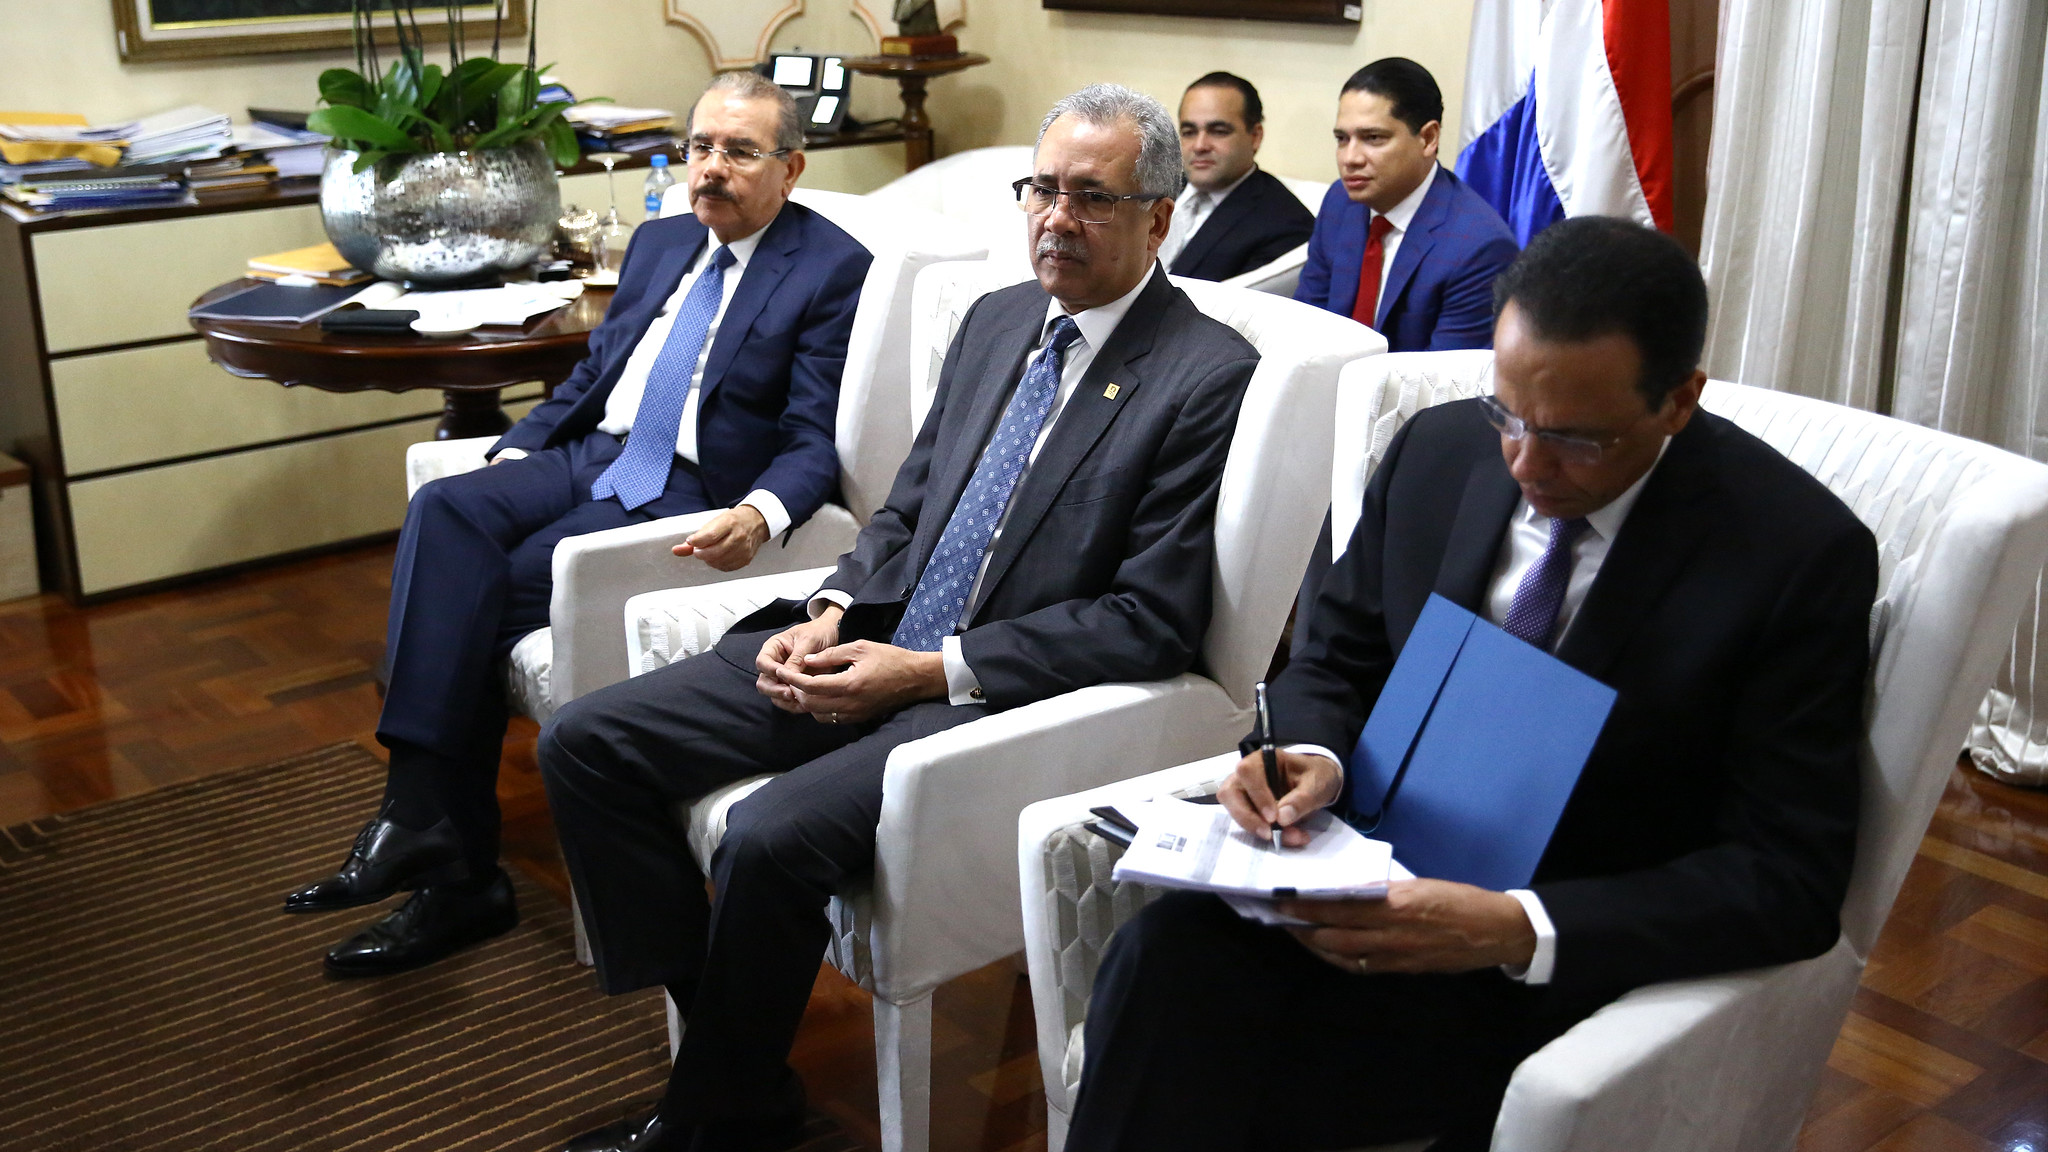 REPÚBLICA DOMINICANA: Presidente Danilo Medina recibe informe sobre avances construcciones edificaciones escolares